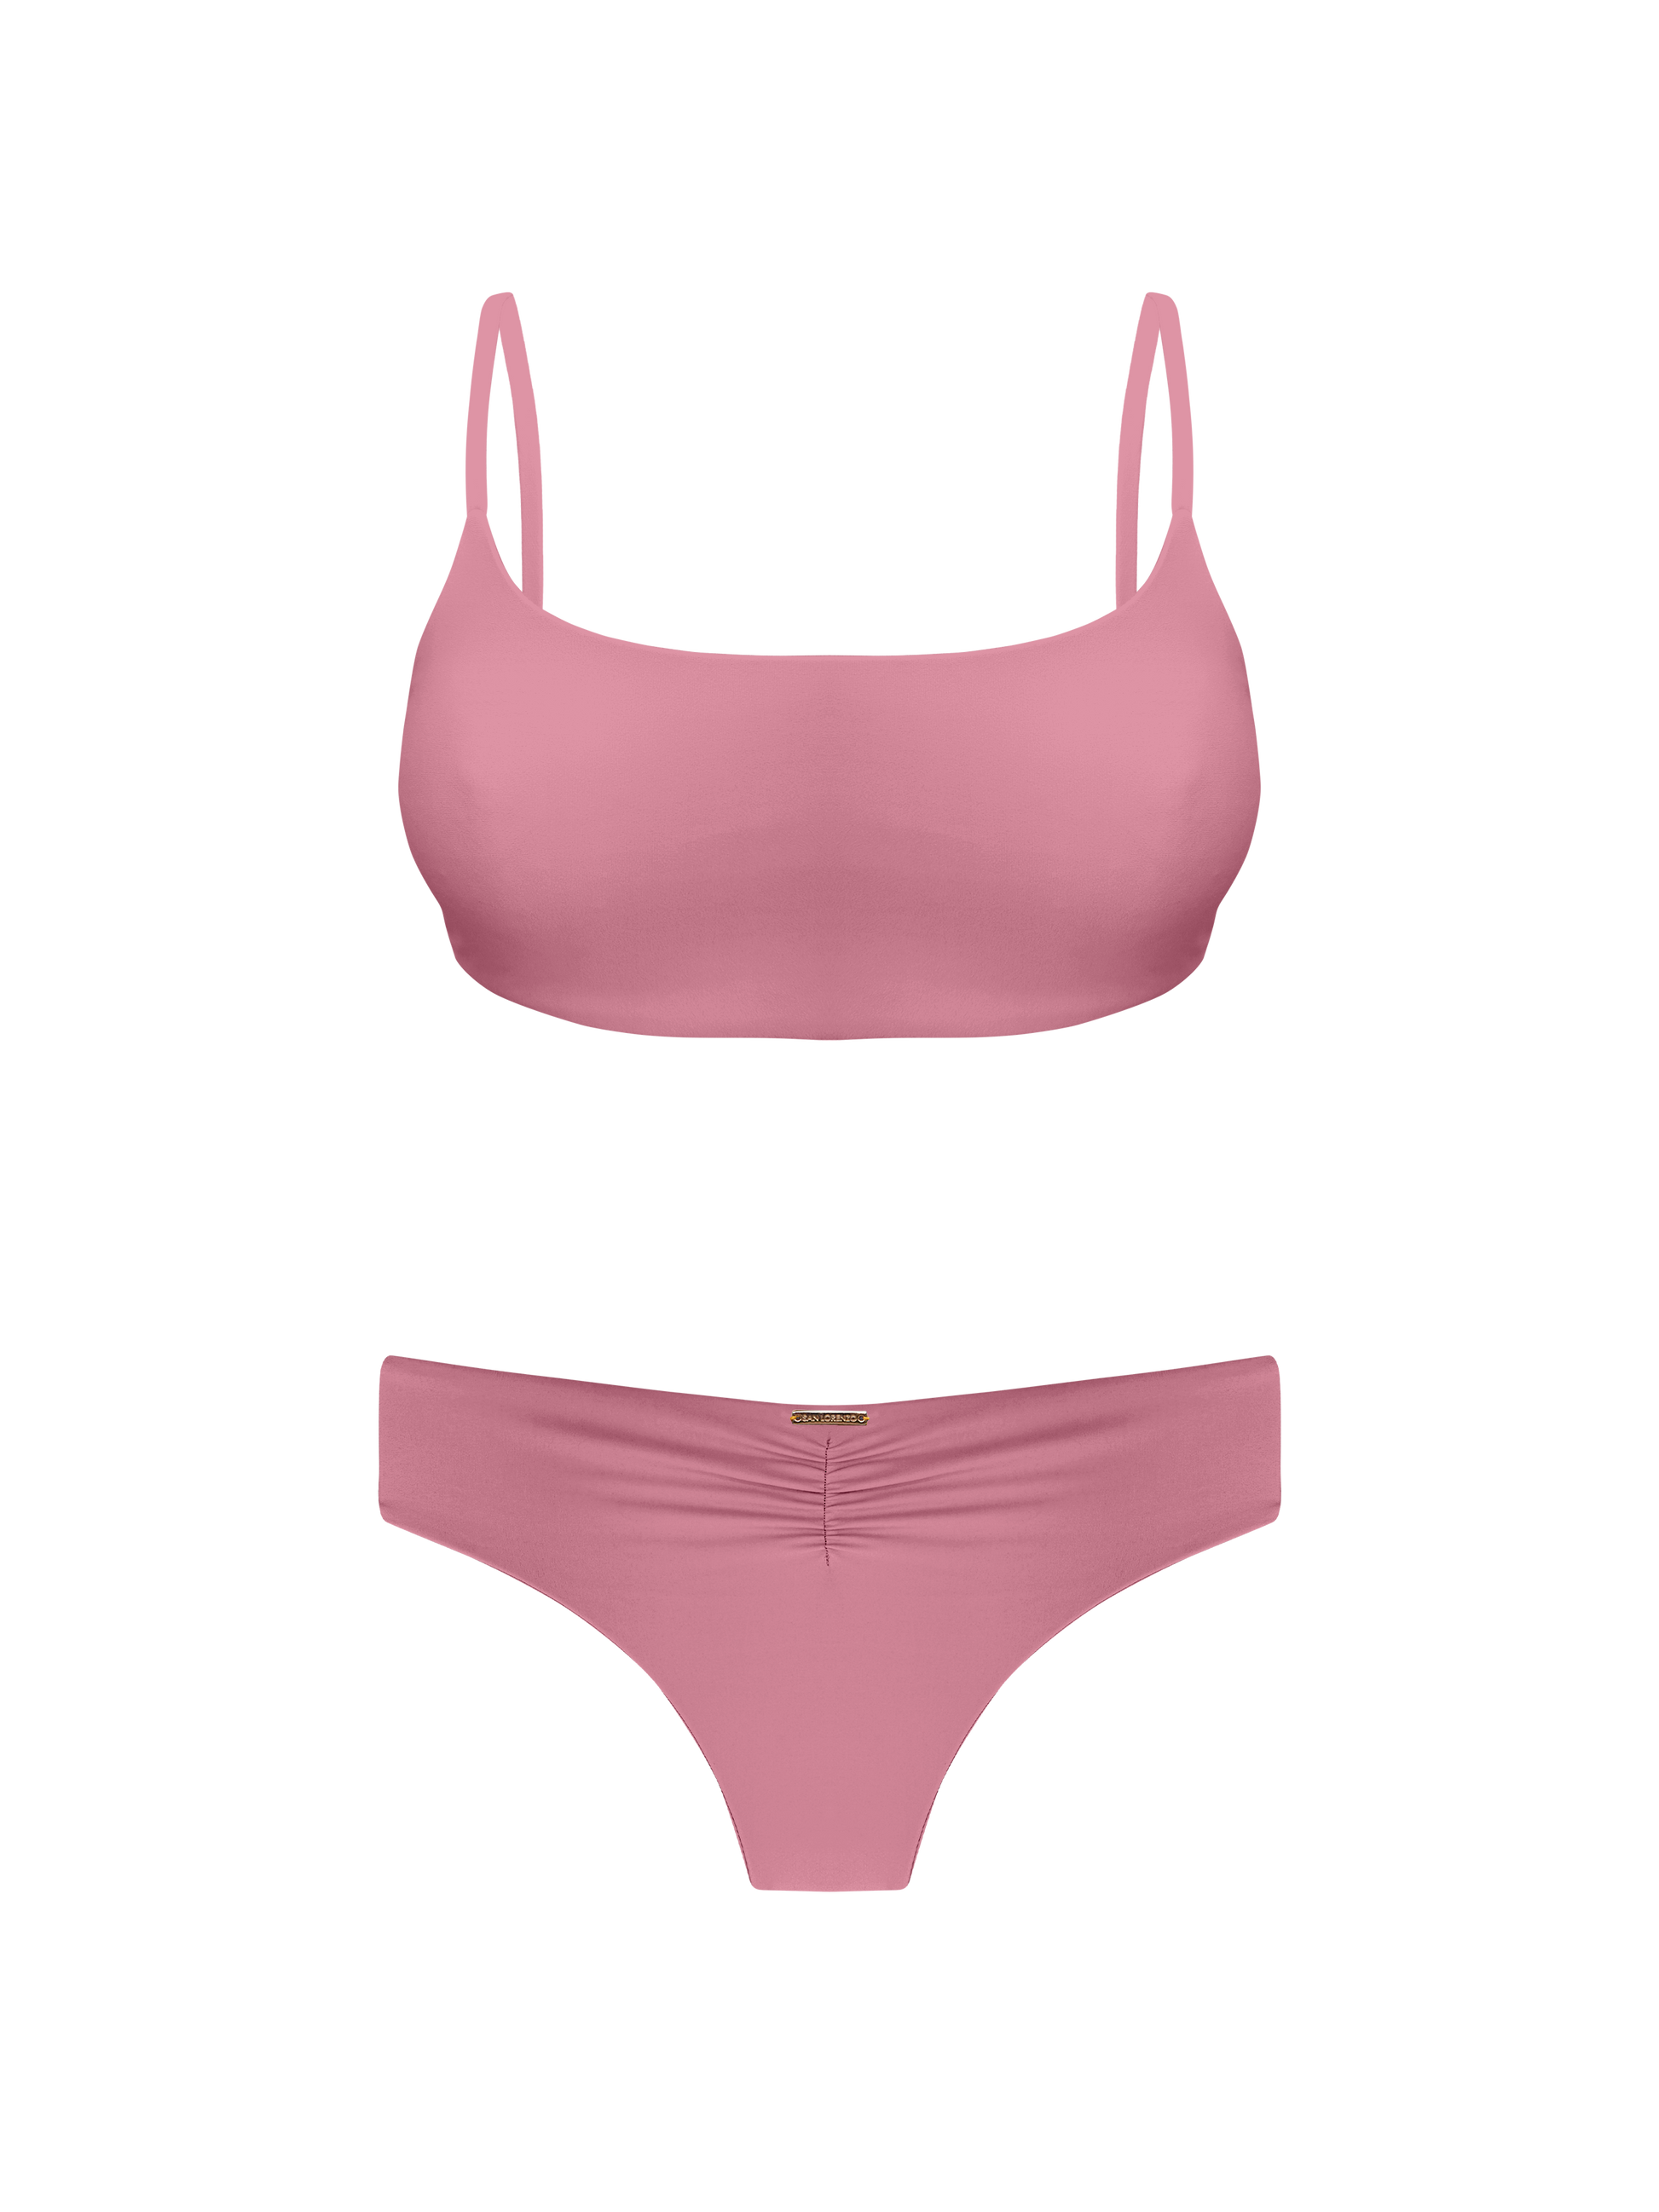 Sport Cross Back Bikini Coral By X-Small San Lorenzo Pink – San Bikinis Top Lorenzo Top Colletion